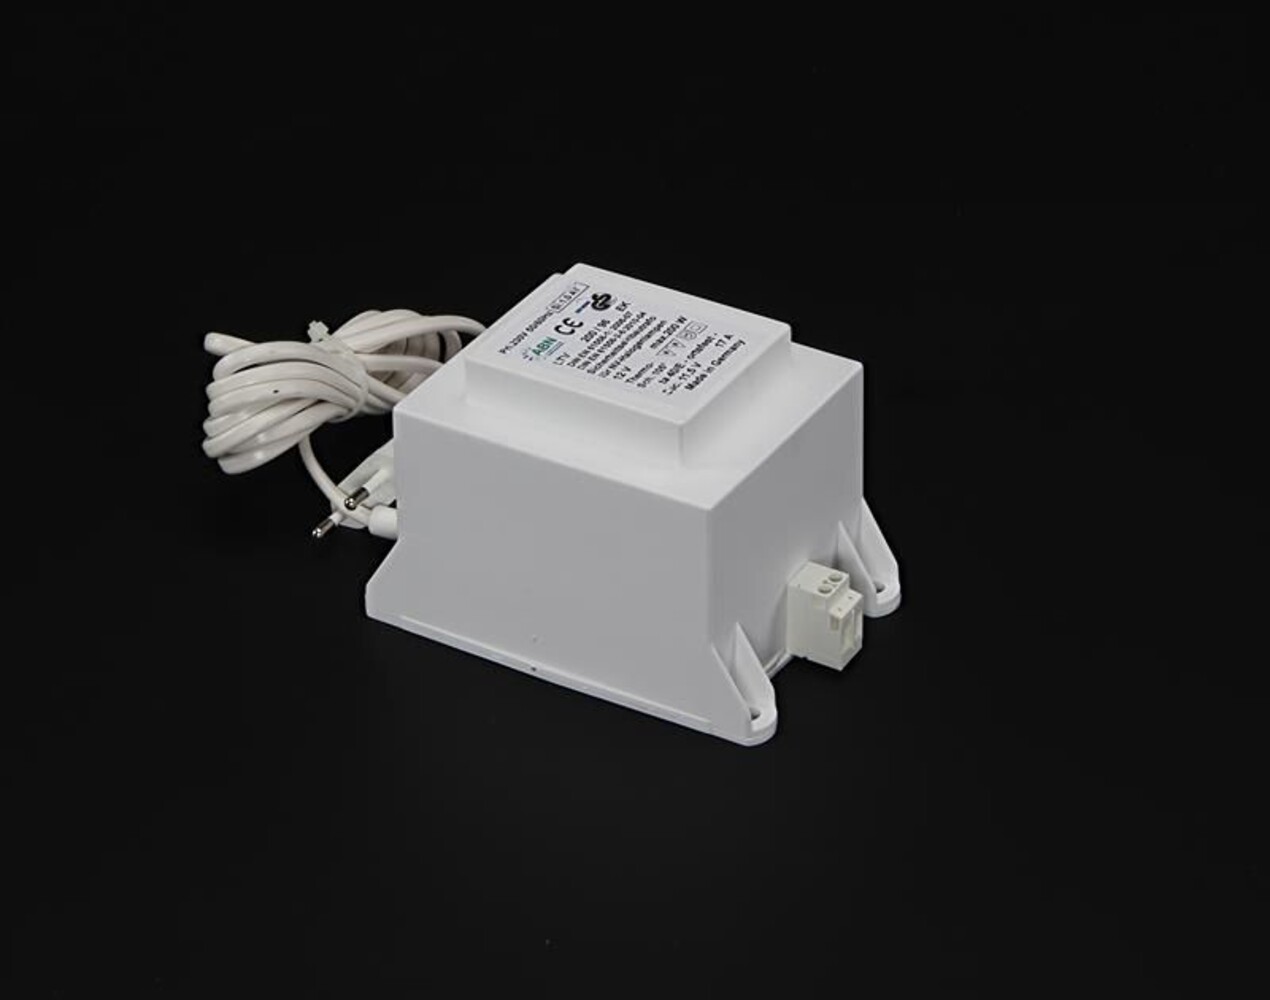 Modernes LED Netzteil von der Marke ABN, spannungskonstant und dimmbar